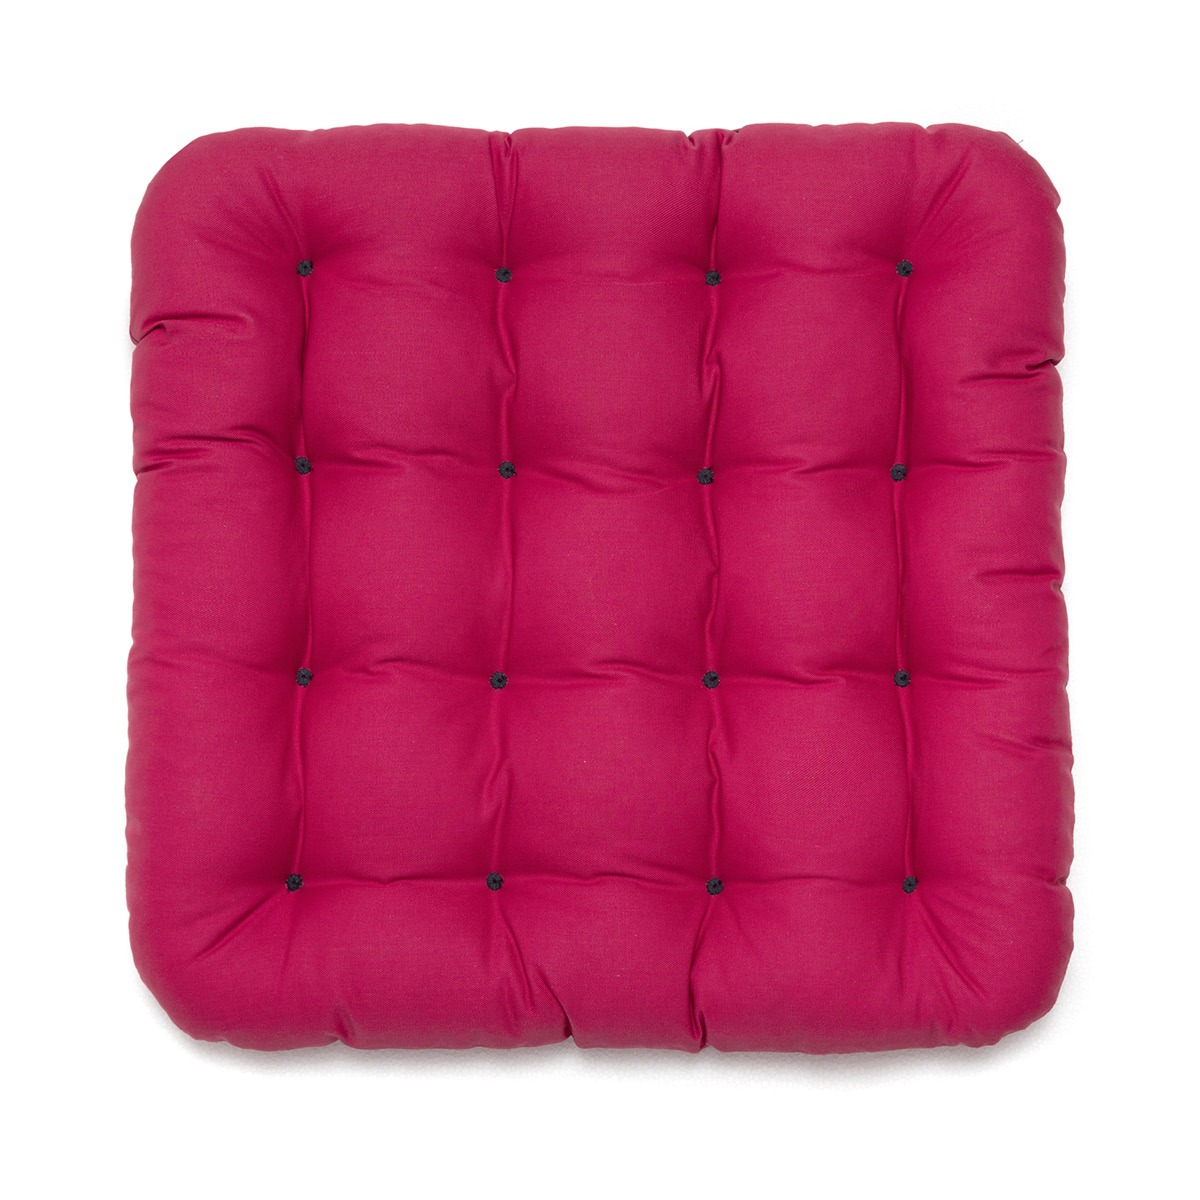 Hochwertiges Stuhlkissen 40x40 pink, Allergiker geeignet aus hautfreundlichem Baumwollstoff, gepolstert mit weißen Riegeln | HAVE A SEAT Living